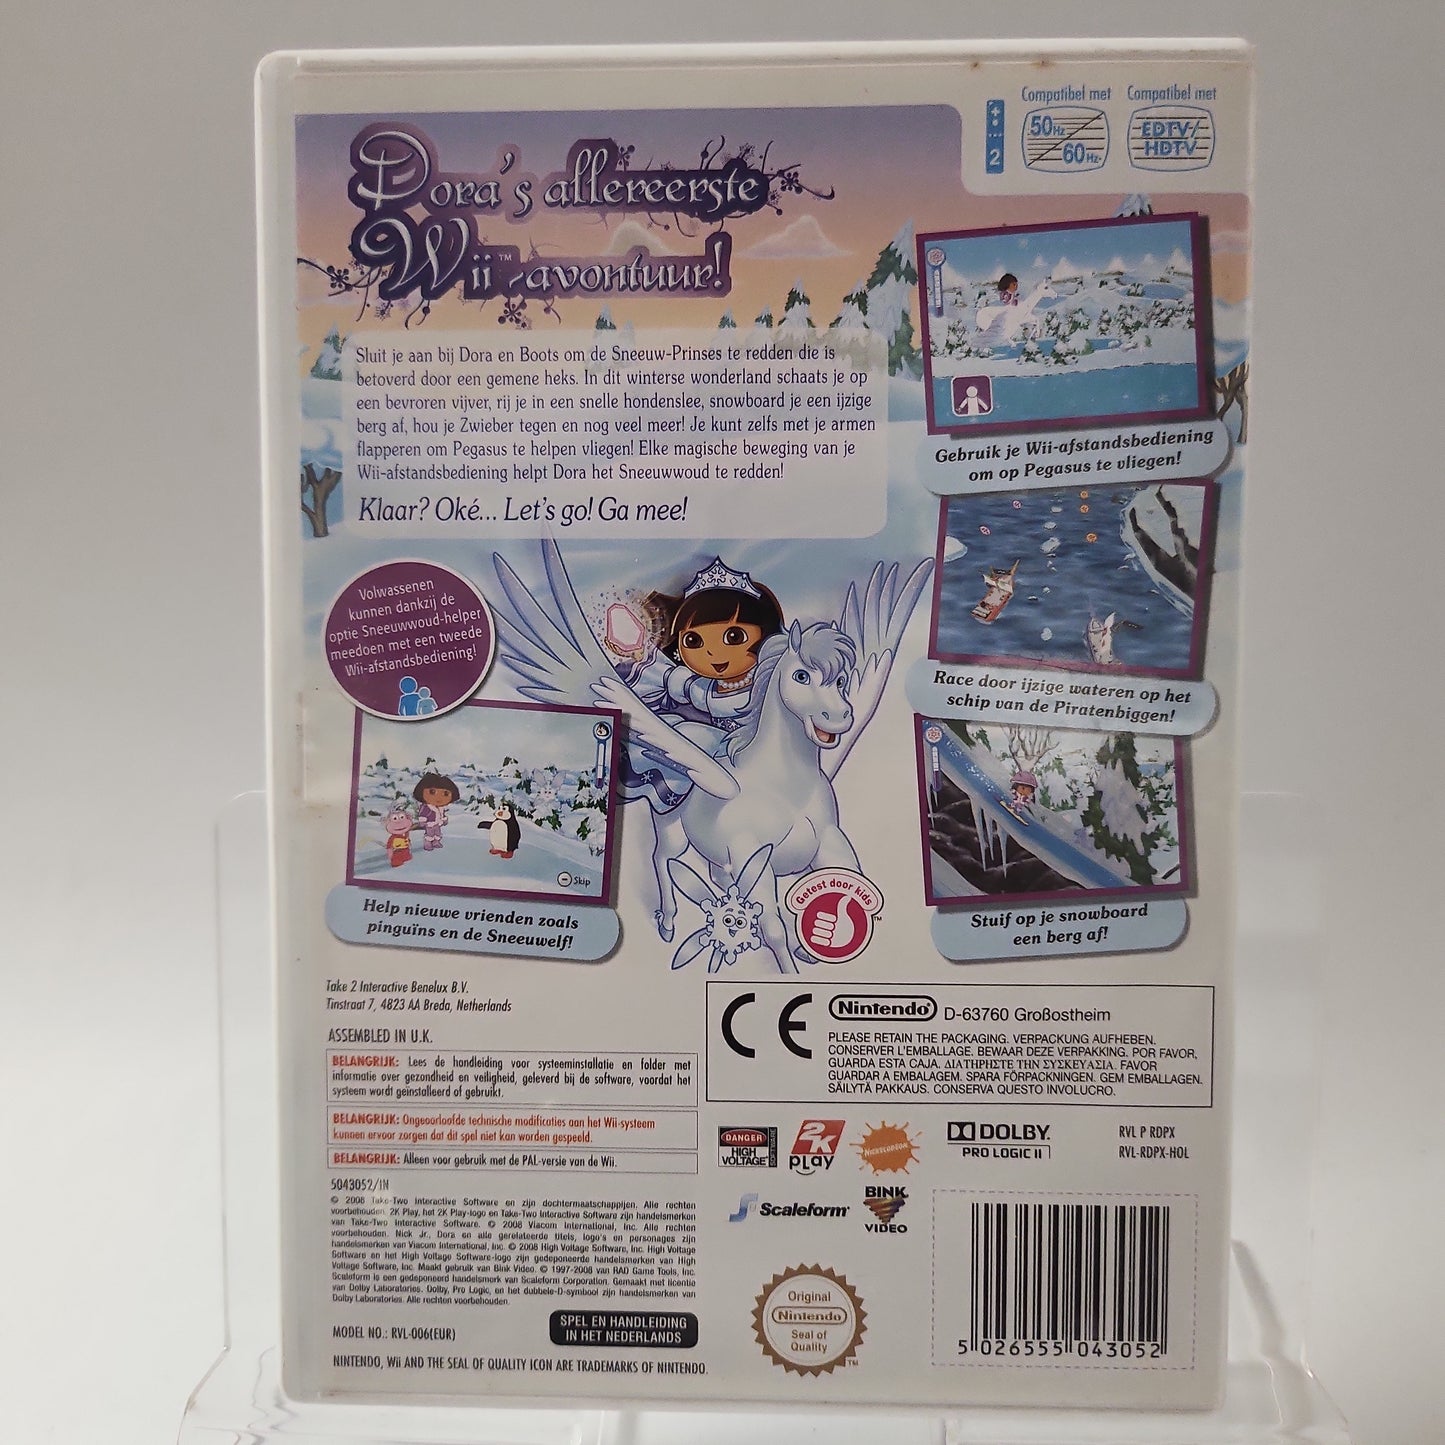 Dora redt de Sneeuwprinses Nintendo Wii